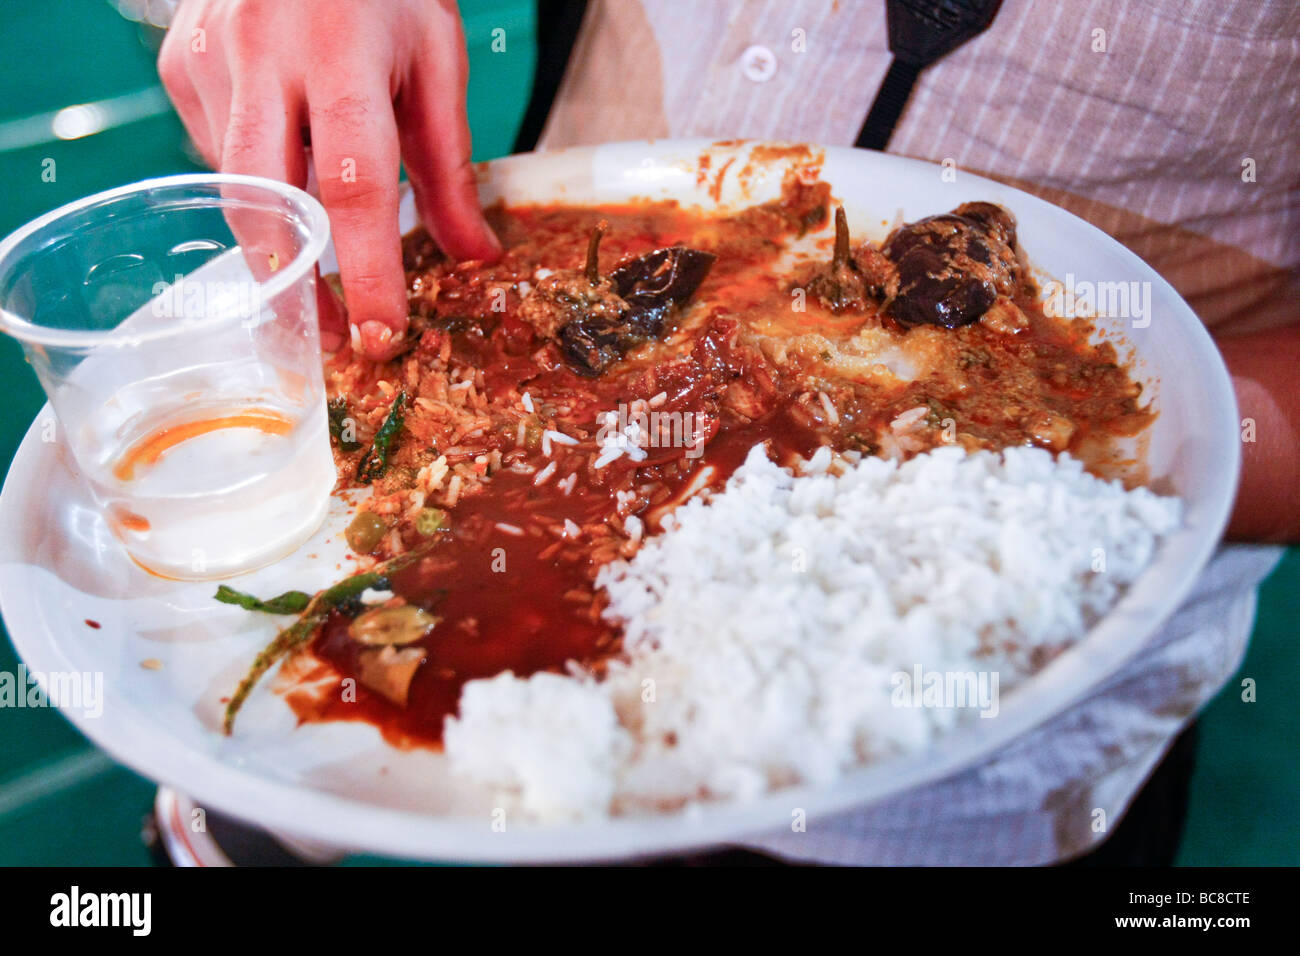 Un occidental mange un repas indien directement avec ses mains dans la façon traditionnelle d'Inde du sud. Banque D'Images